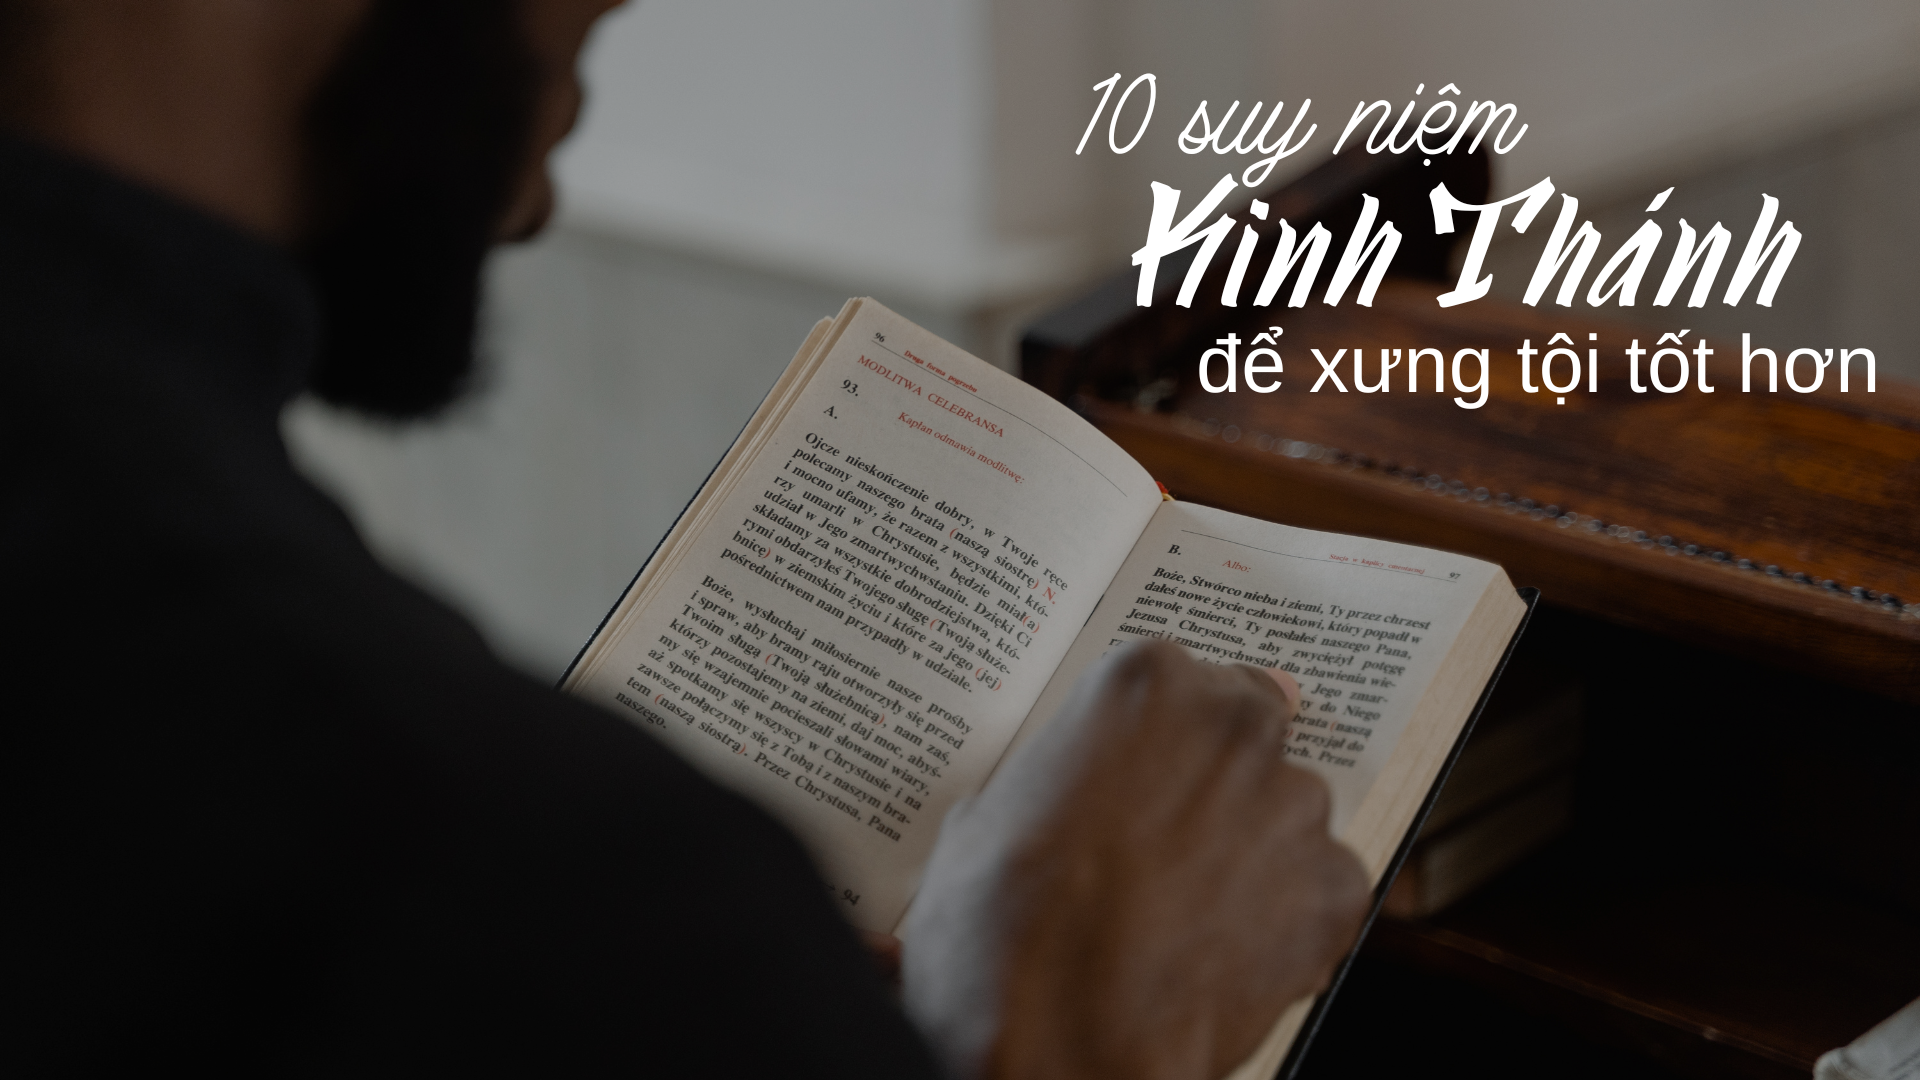 10 suy niệm Kinh thánh để xưng tội tốt hơn